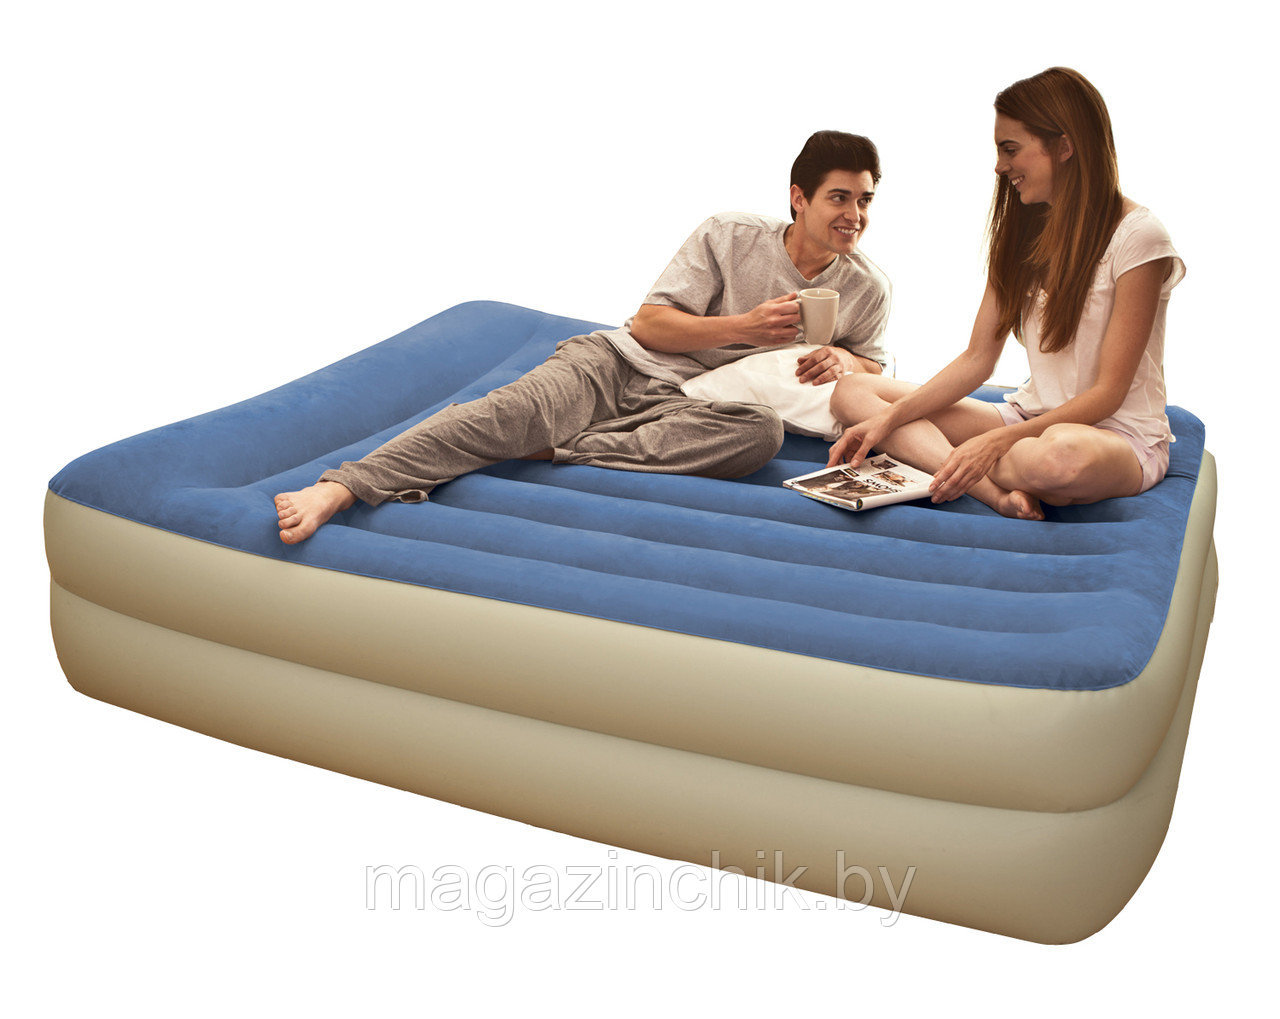 Надувная двуспальная кровать Intex Pillow Rest Raised Bed 66714 152*203*47 см, встр. элекронасосом